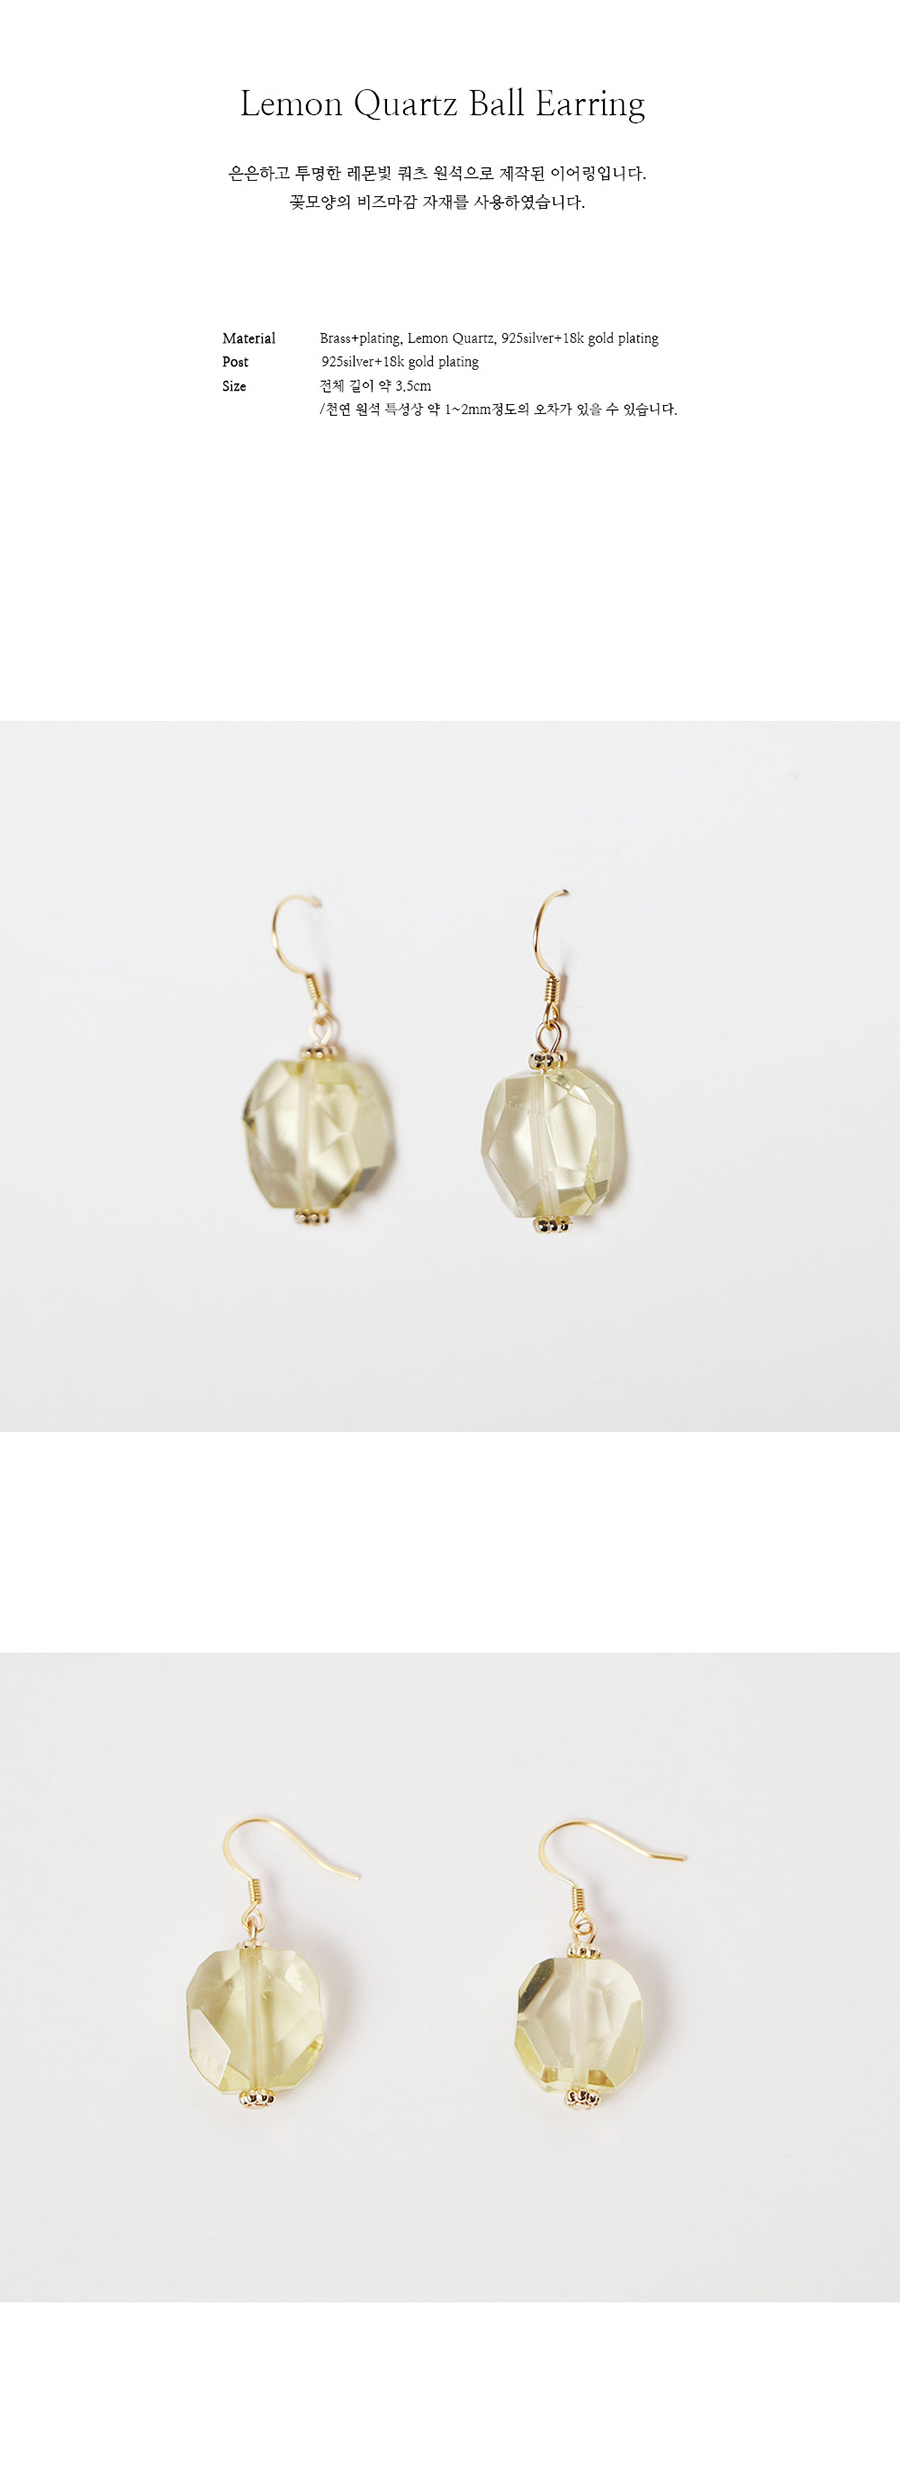 lemon quartz ball earring 26,000원 - 레스이즈모어 이동요망, X주얼리/시계, 귀걸이, 진주/원석 바보사랑 lemon quartz ball earring 26,000원 - 레스이즈모어 이동요망, X주얼리/시계, 귀걸이, 진주/원석 바보사랑